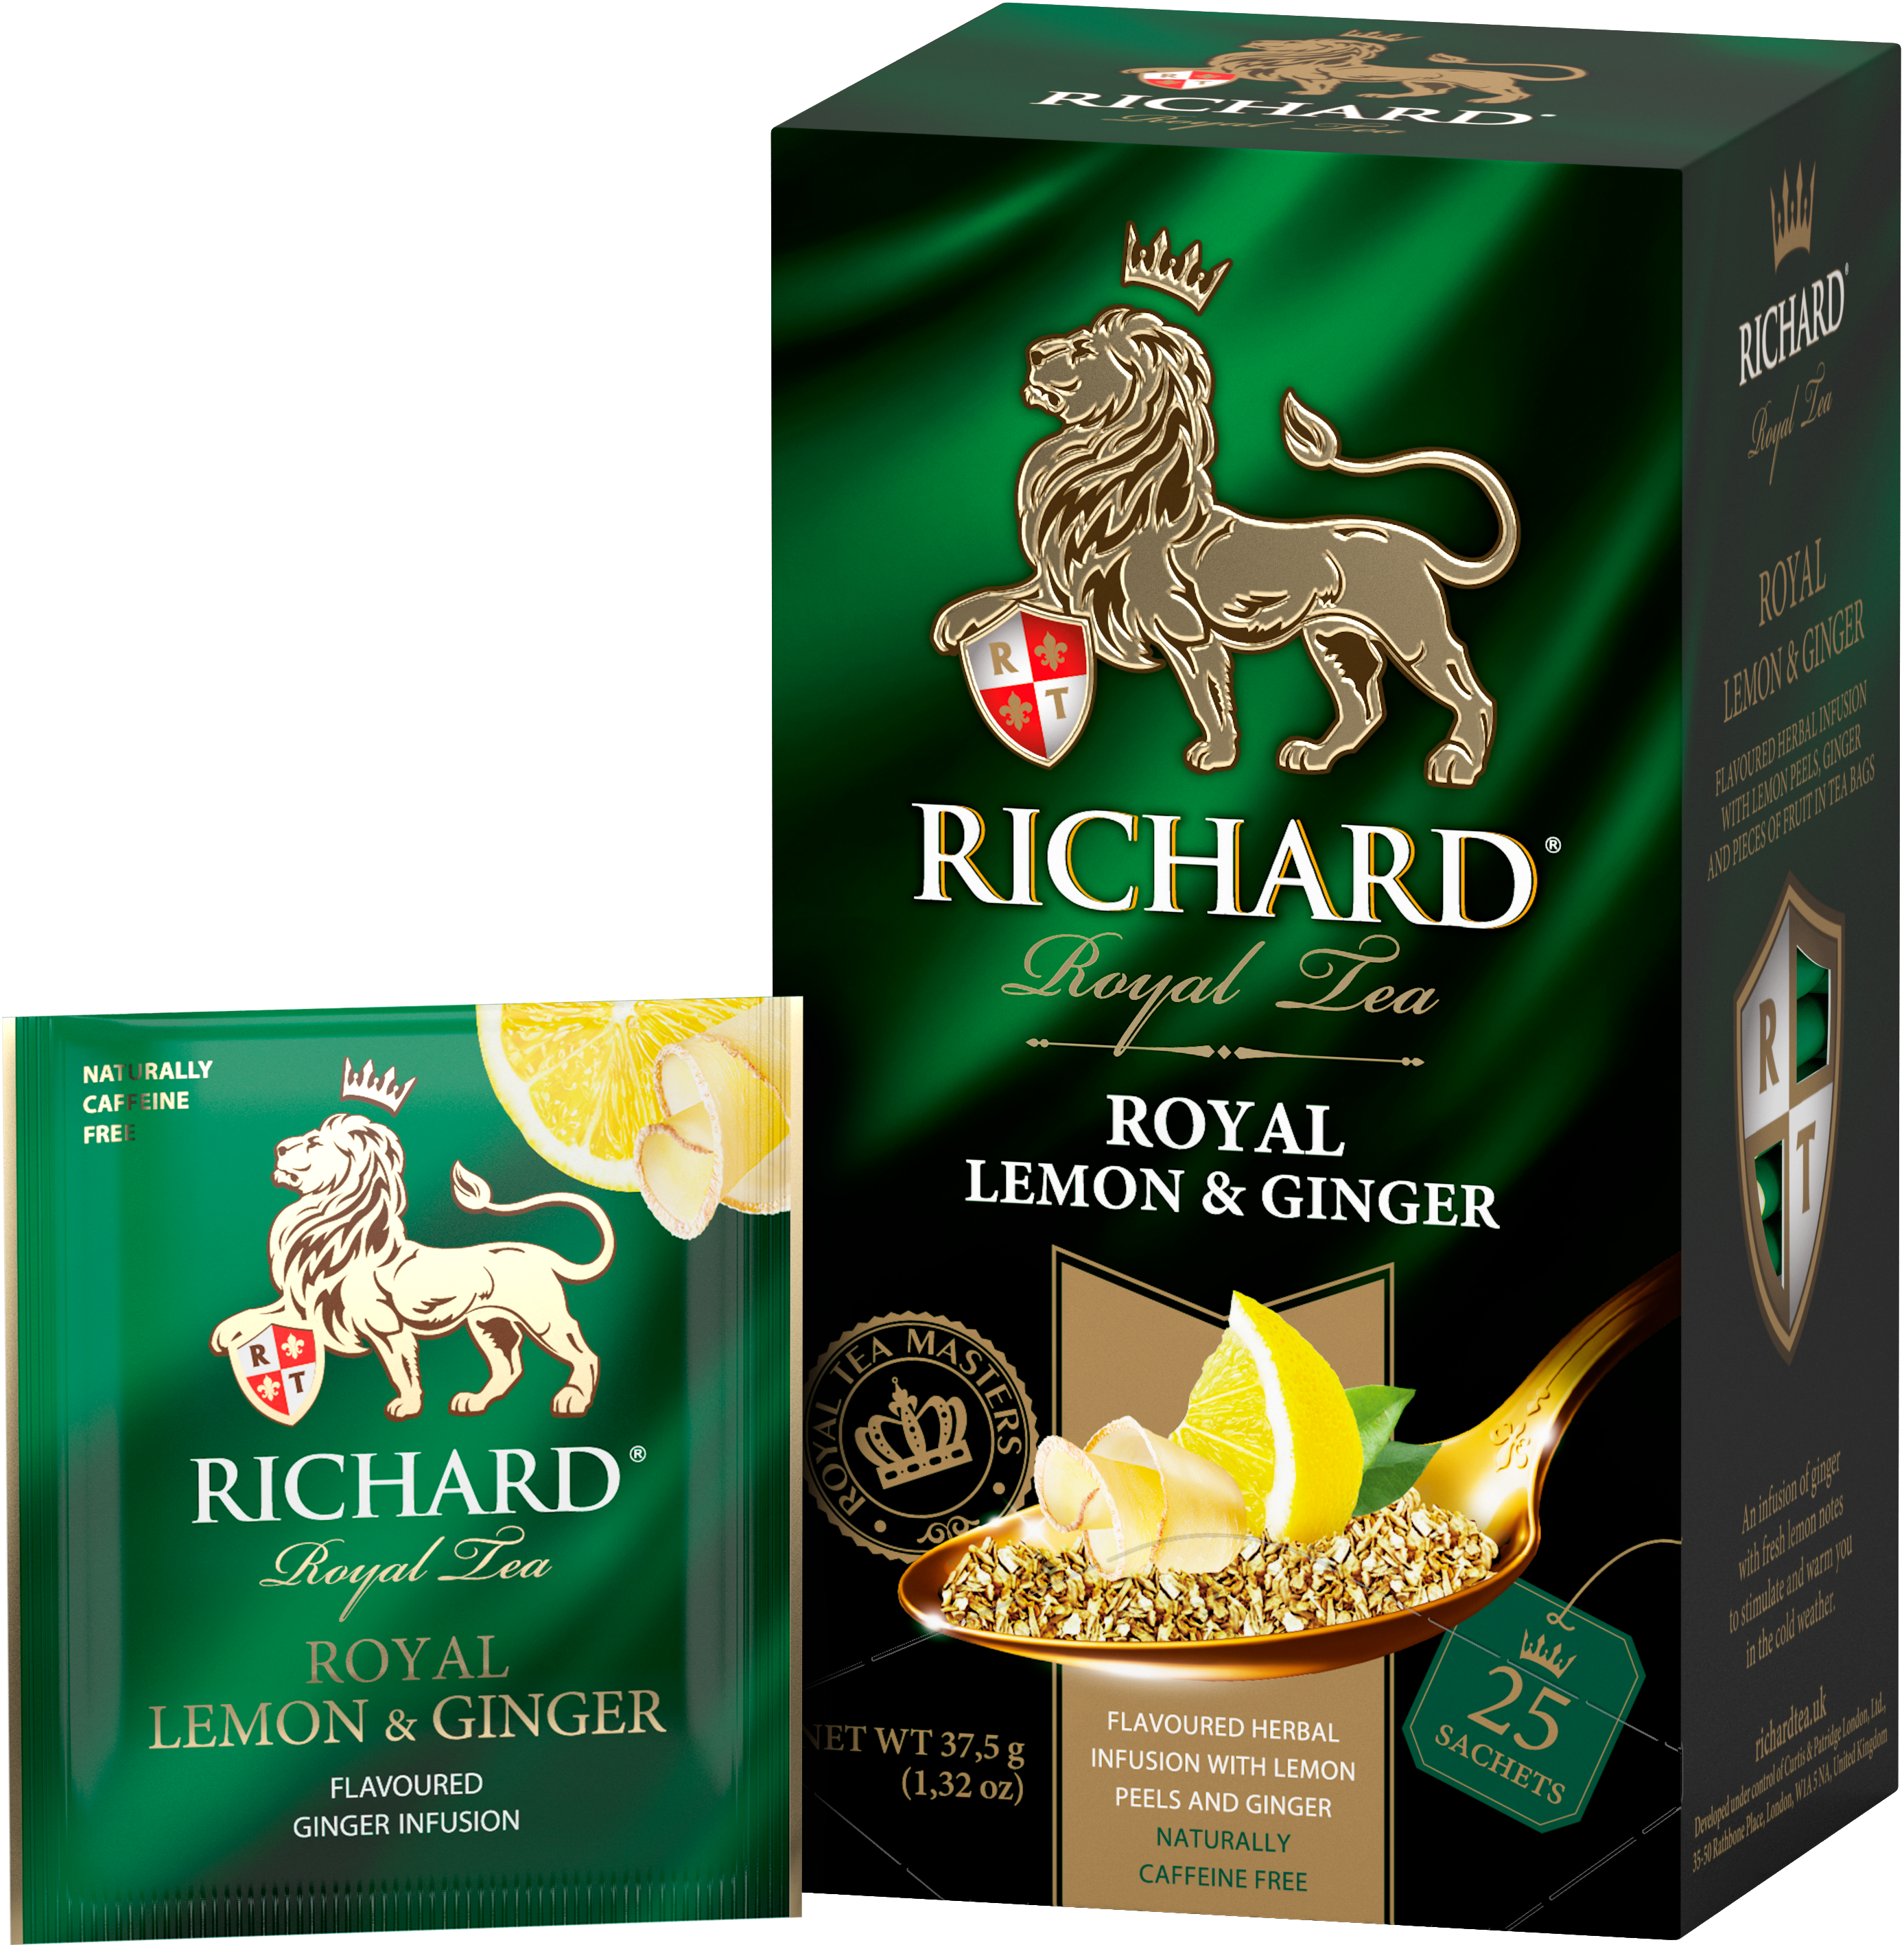 Royal Lemon & Ginger, roheline tee sidruni ja ingveriga, teekotid 25x2g. - Richard Tea Estonia